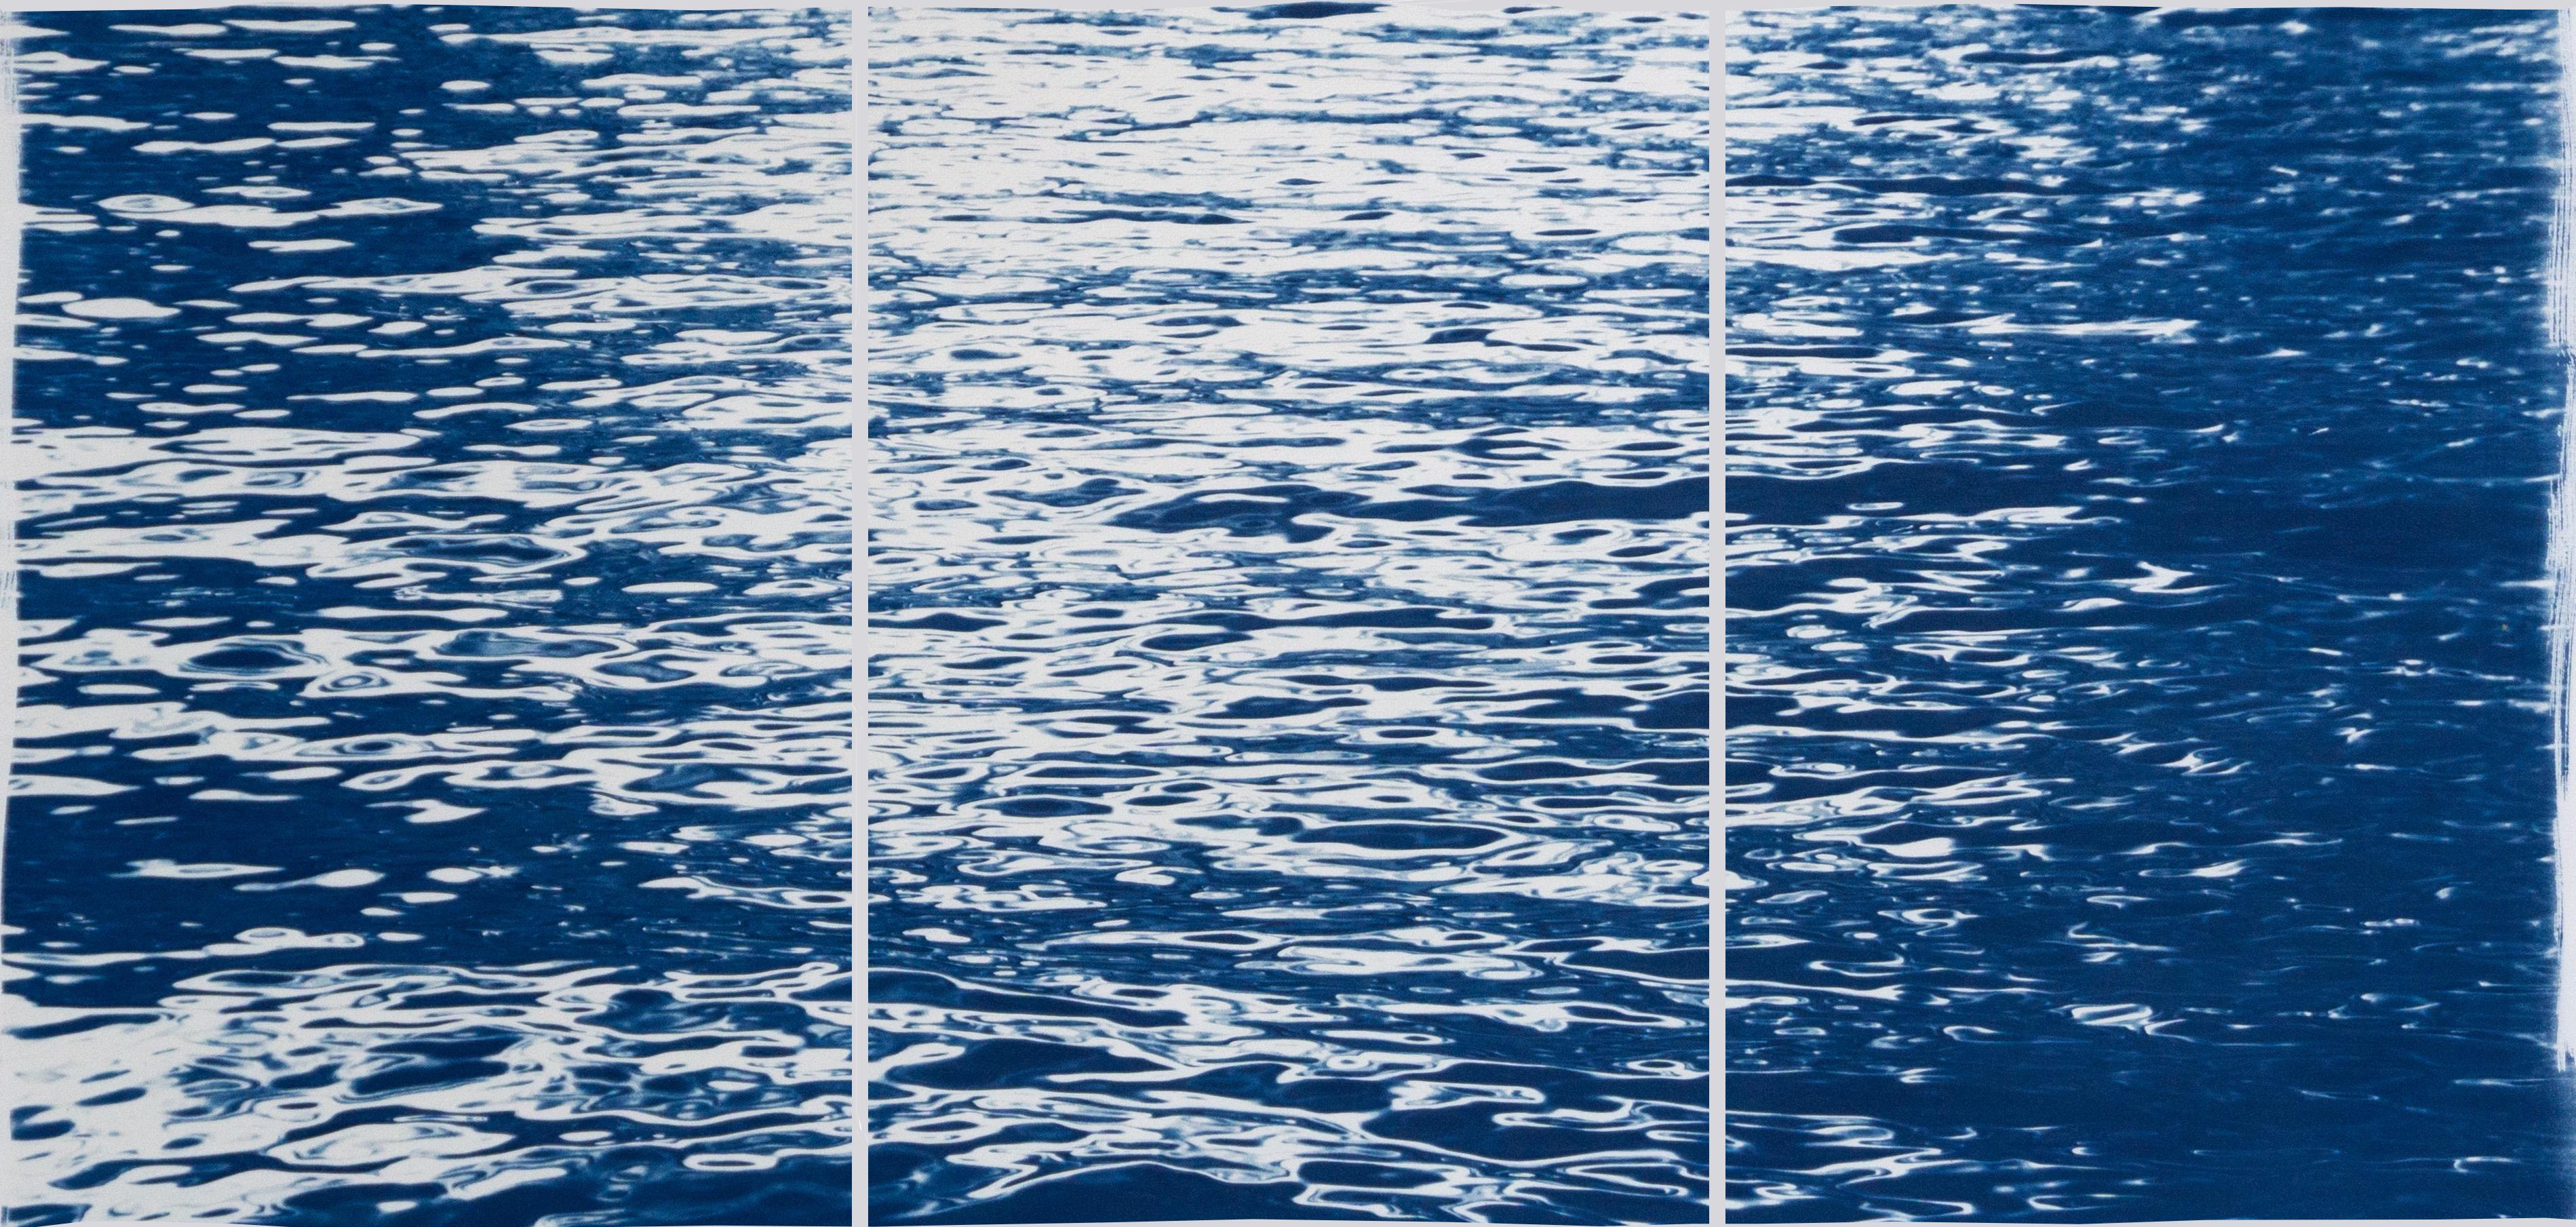 Abstract Print Kind of Cyan - Le clair de lune au-dessus du lac de Côme, triptyque nautique d'eaux mobiles